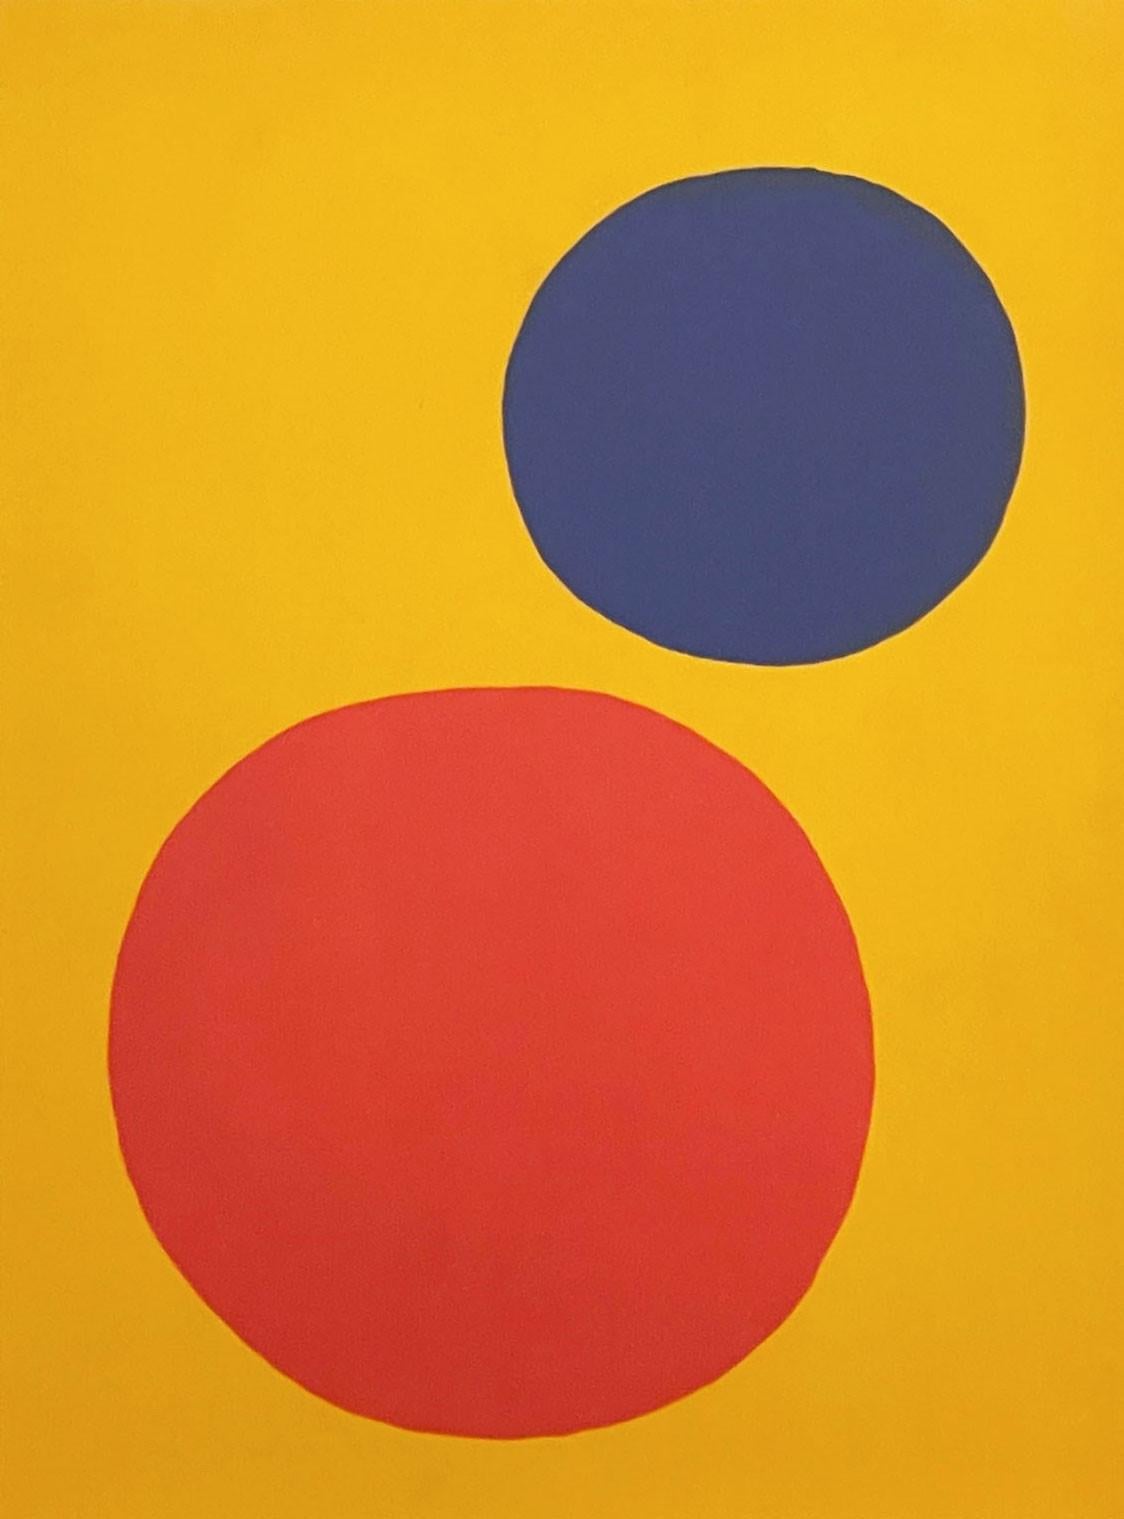 Abstract Print Alexander Calder - sphères rouges et bleues, de Derriere le Miroir n°201